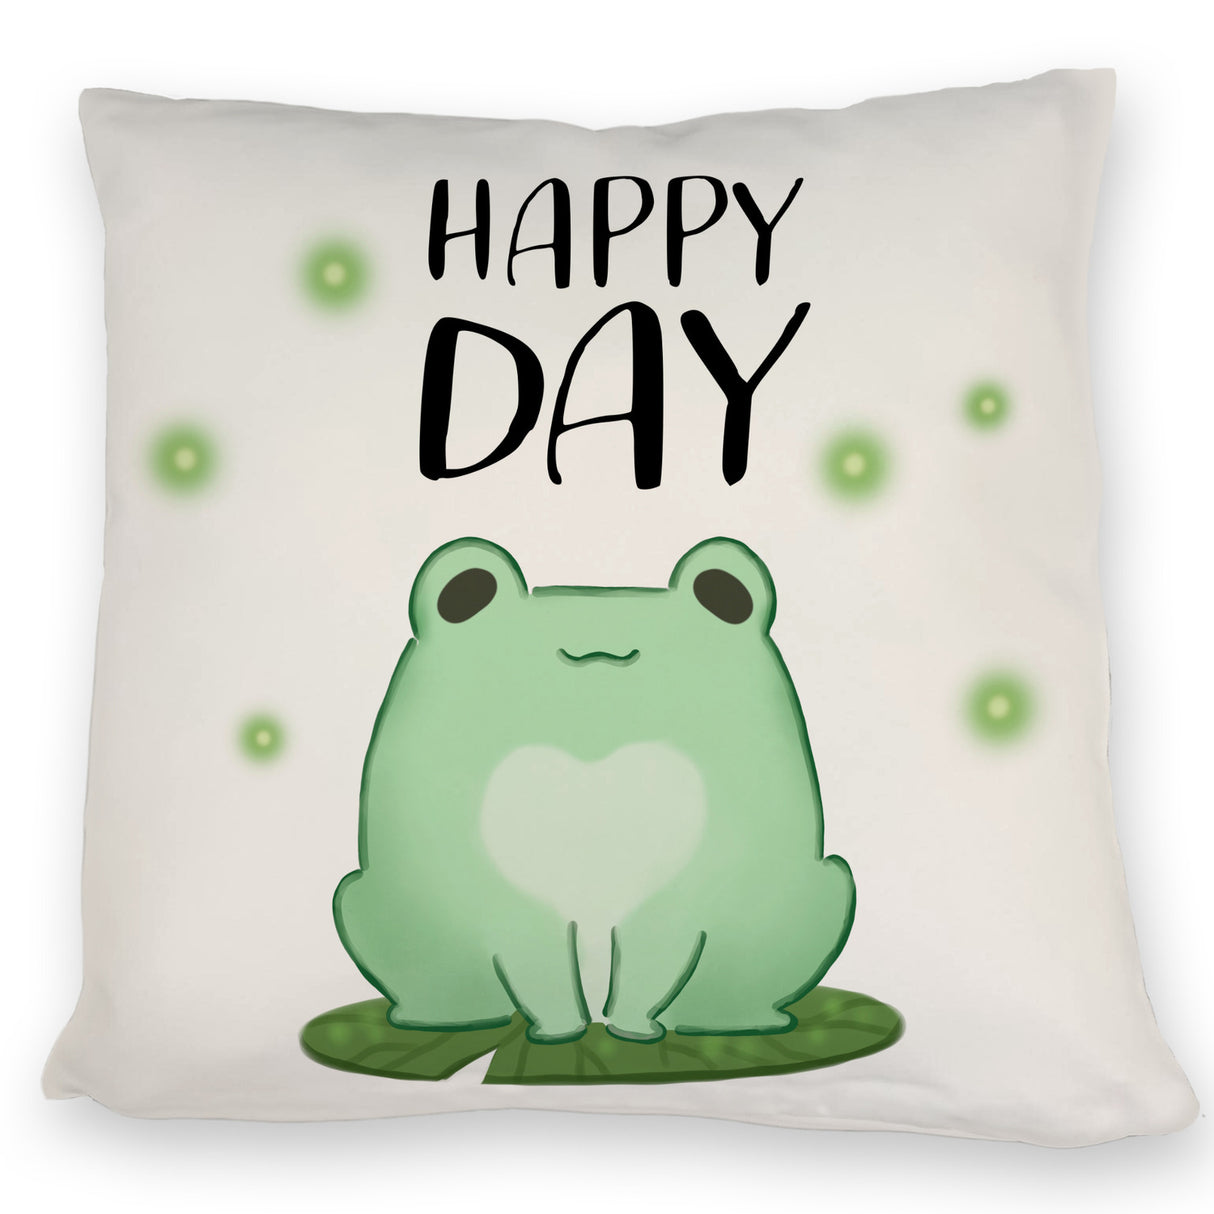 Frosch Kissen Happy Day - Jetzt kaufen und glücklich sein! –